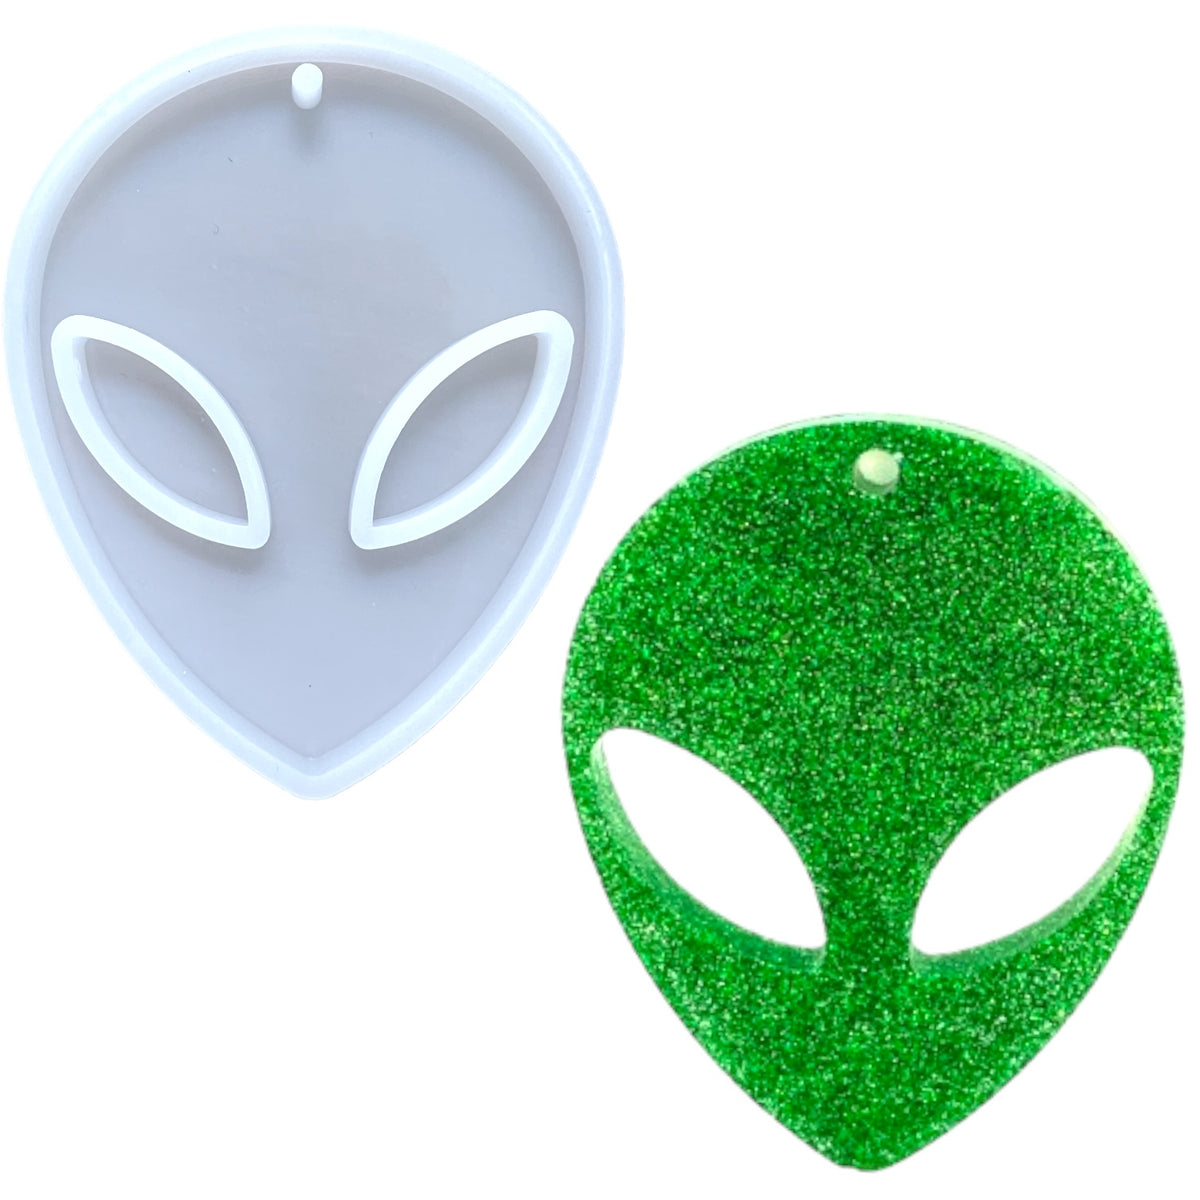 UV Safe Alien Keychain Mold for UV or Epoxy Resin Art